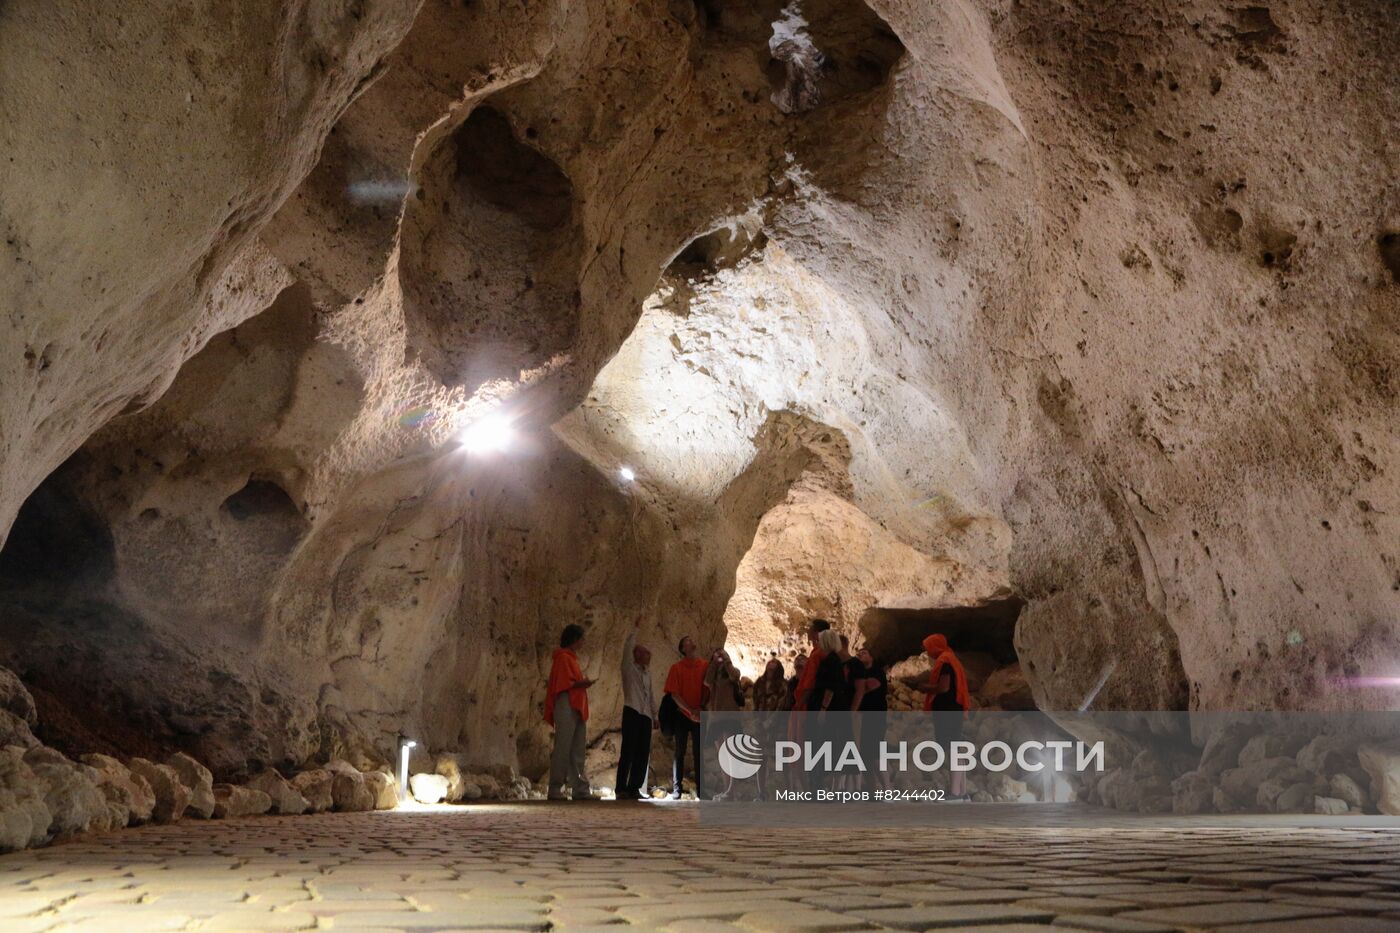 Открытие пещеры "Таврида" для посетителей в Крыму